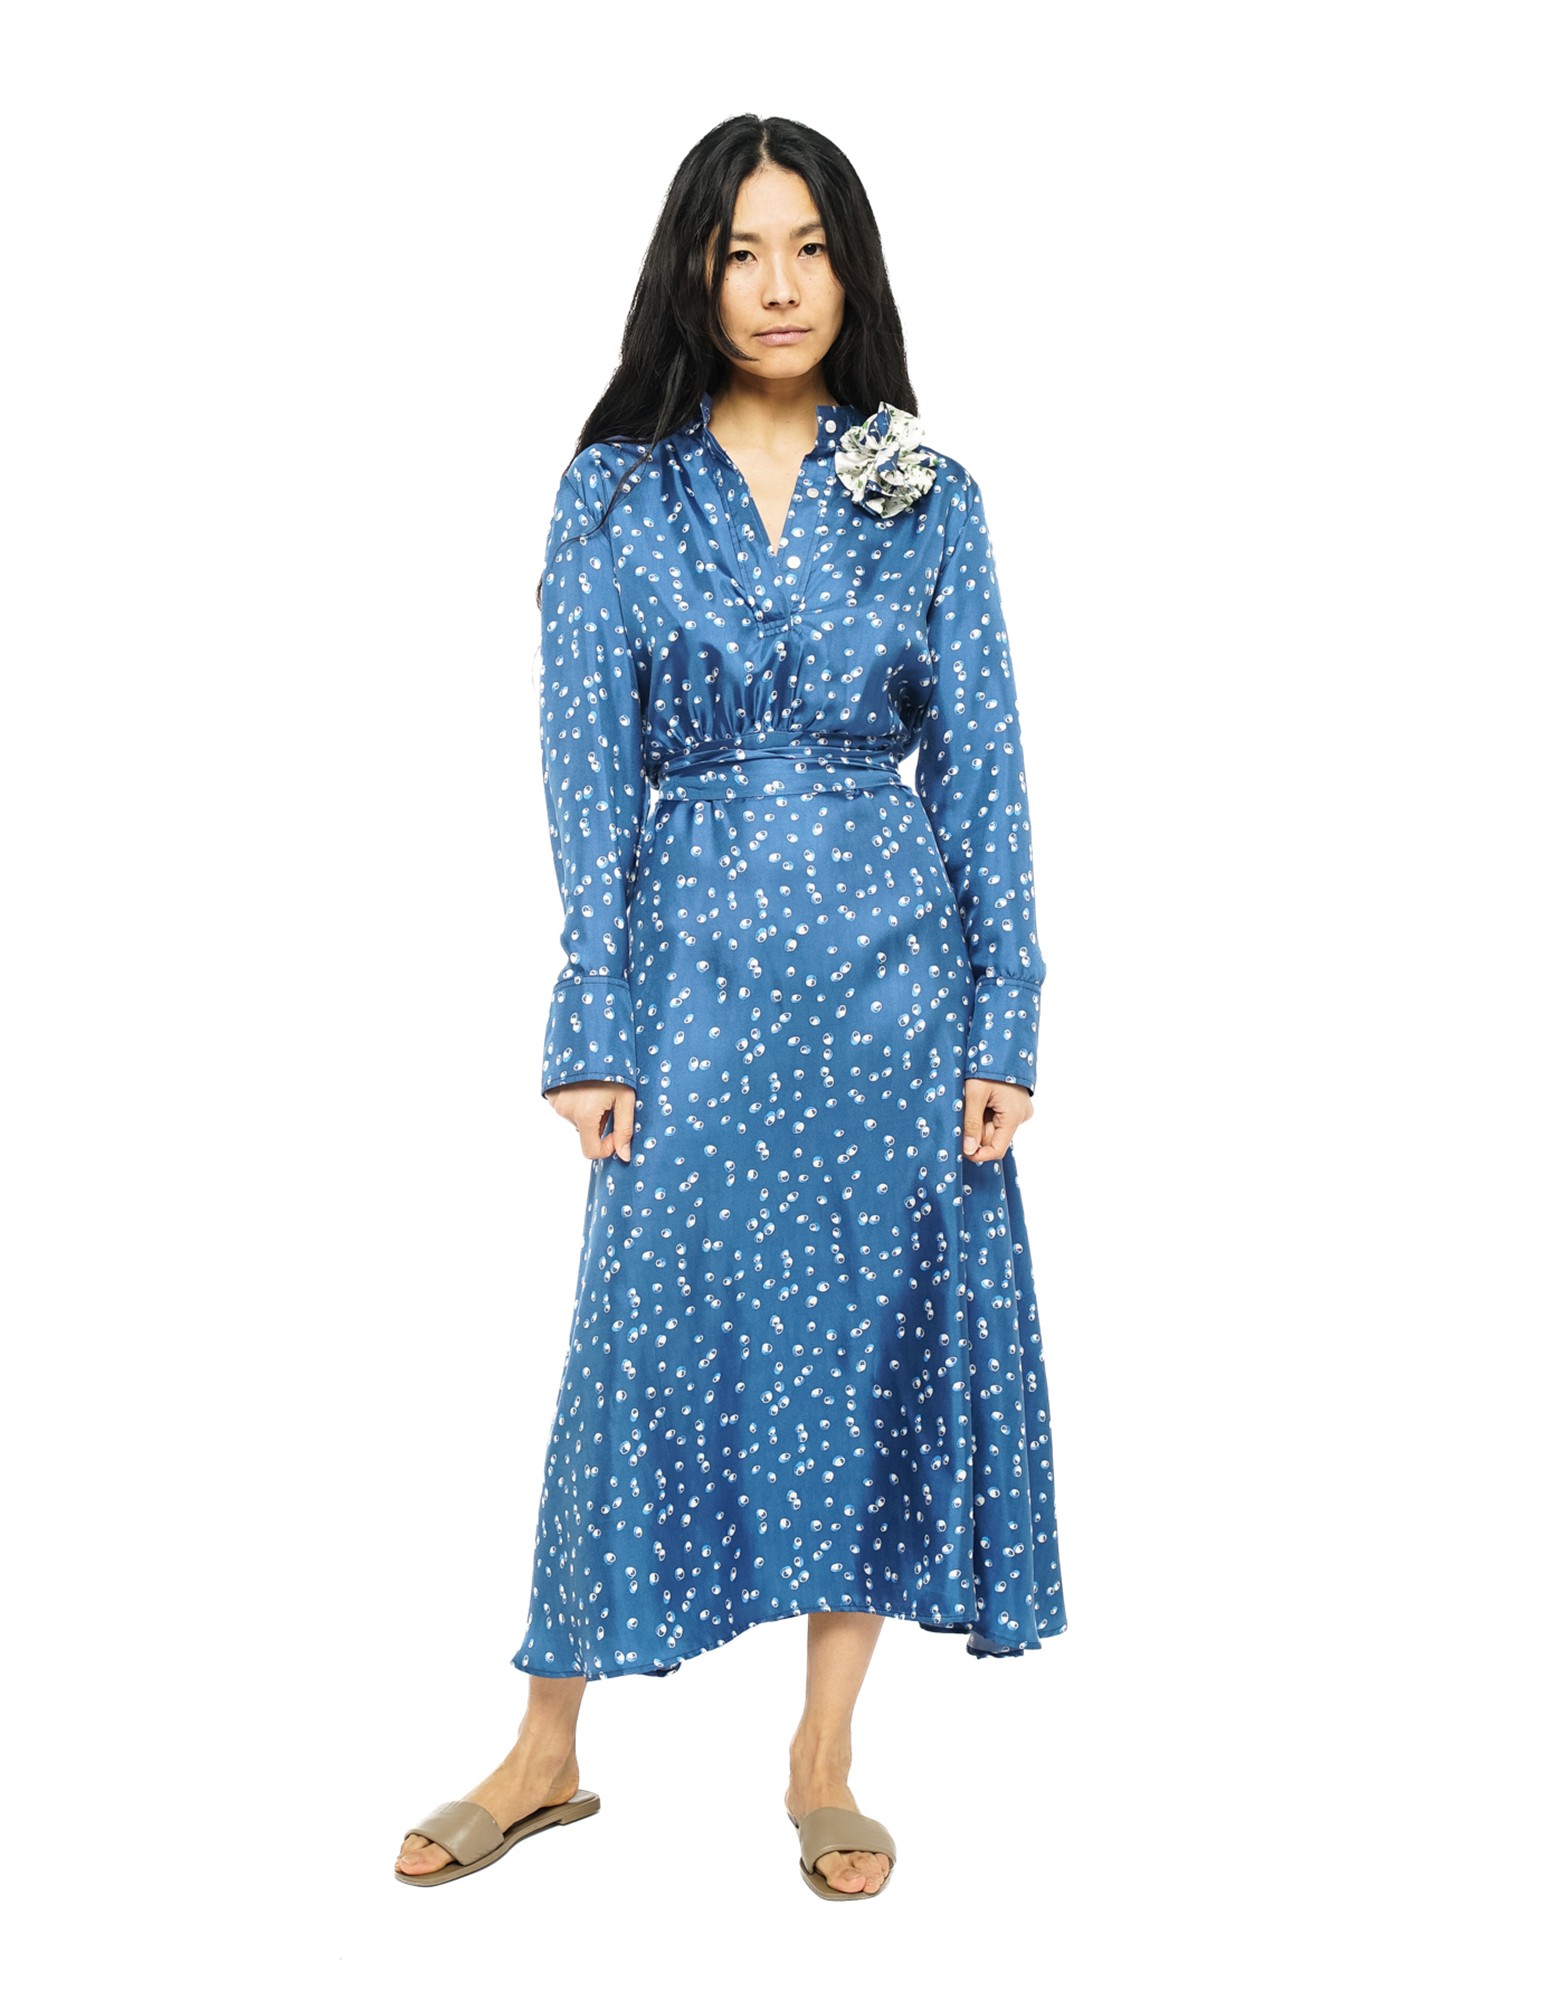 Dress Meghan Ref 23.11.18 C - Homepage